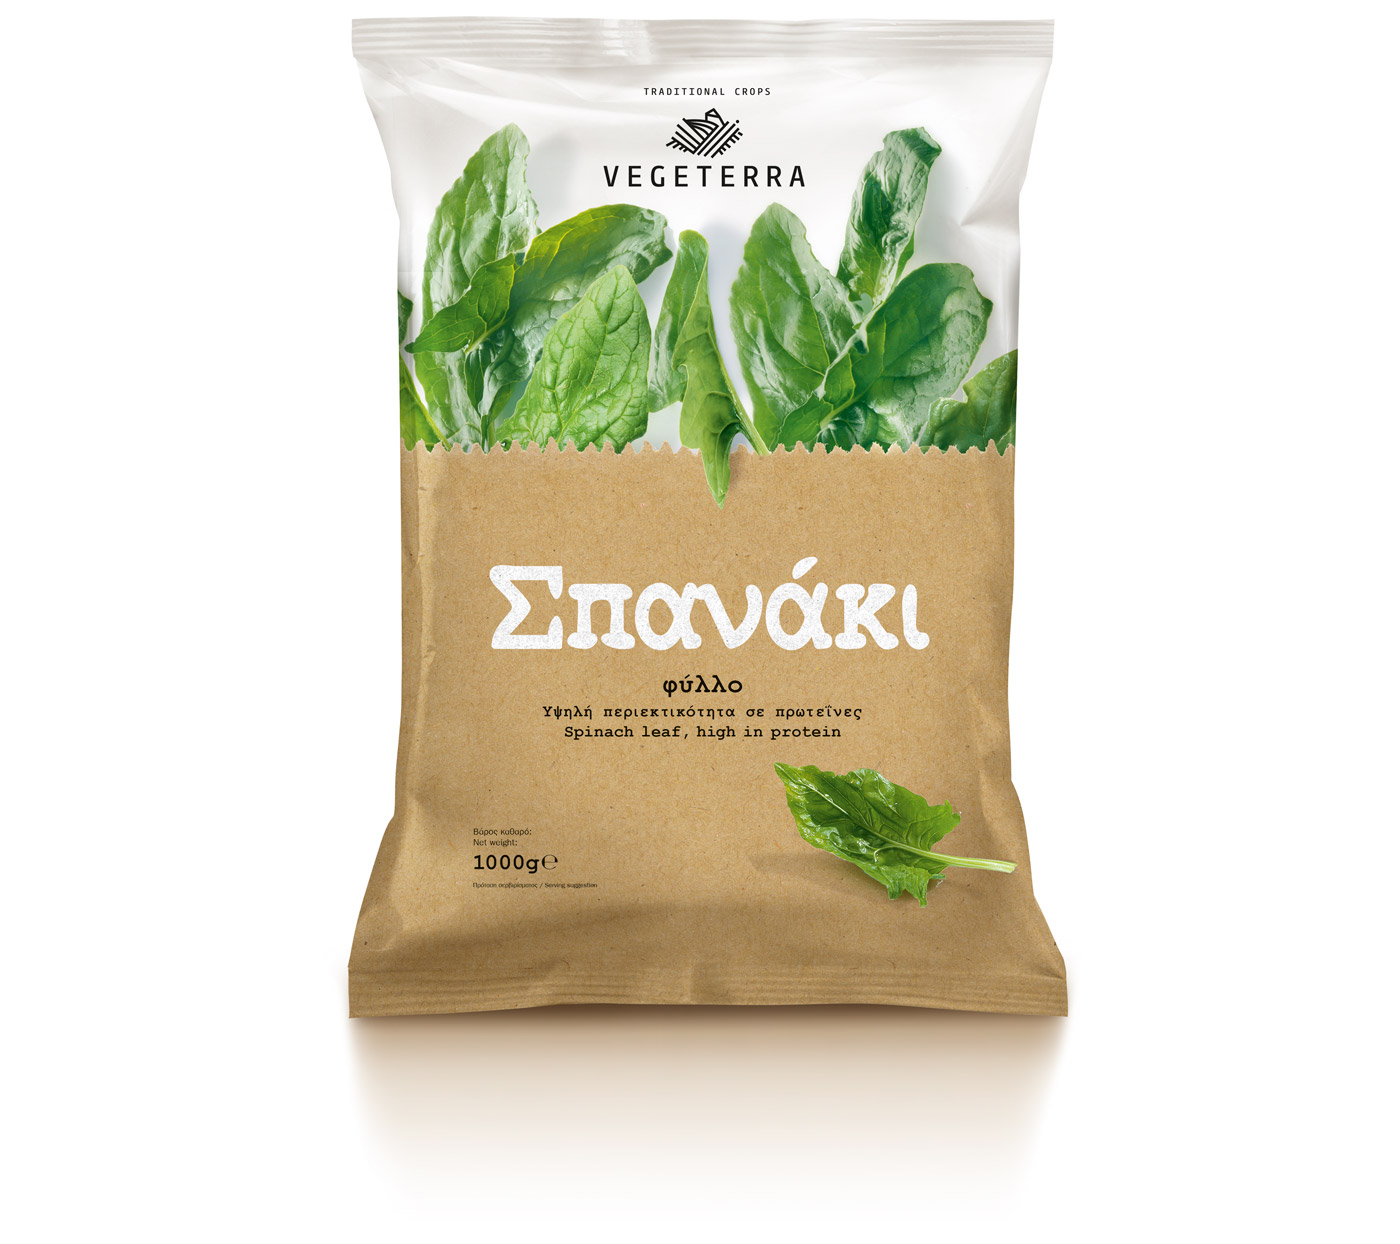 Vegeterra 冷冻蔬菜品牌标志设计包装设计5-青菜鸡毛菜